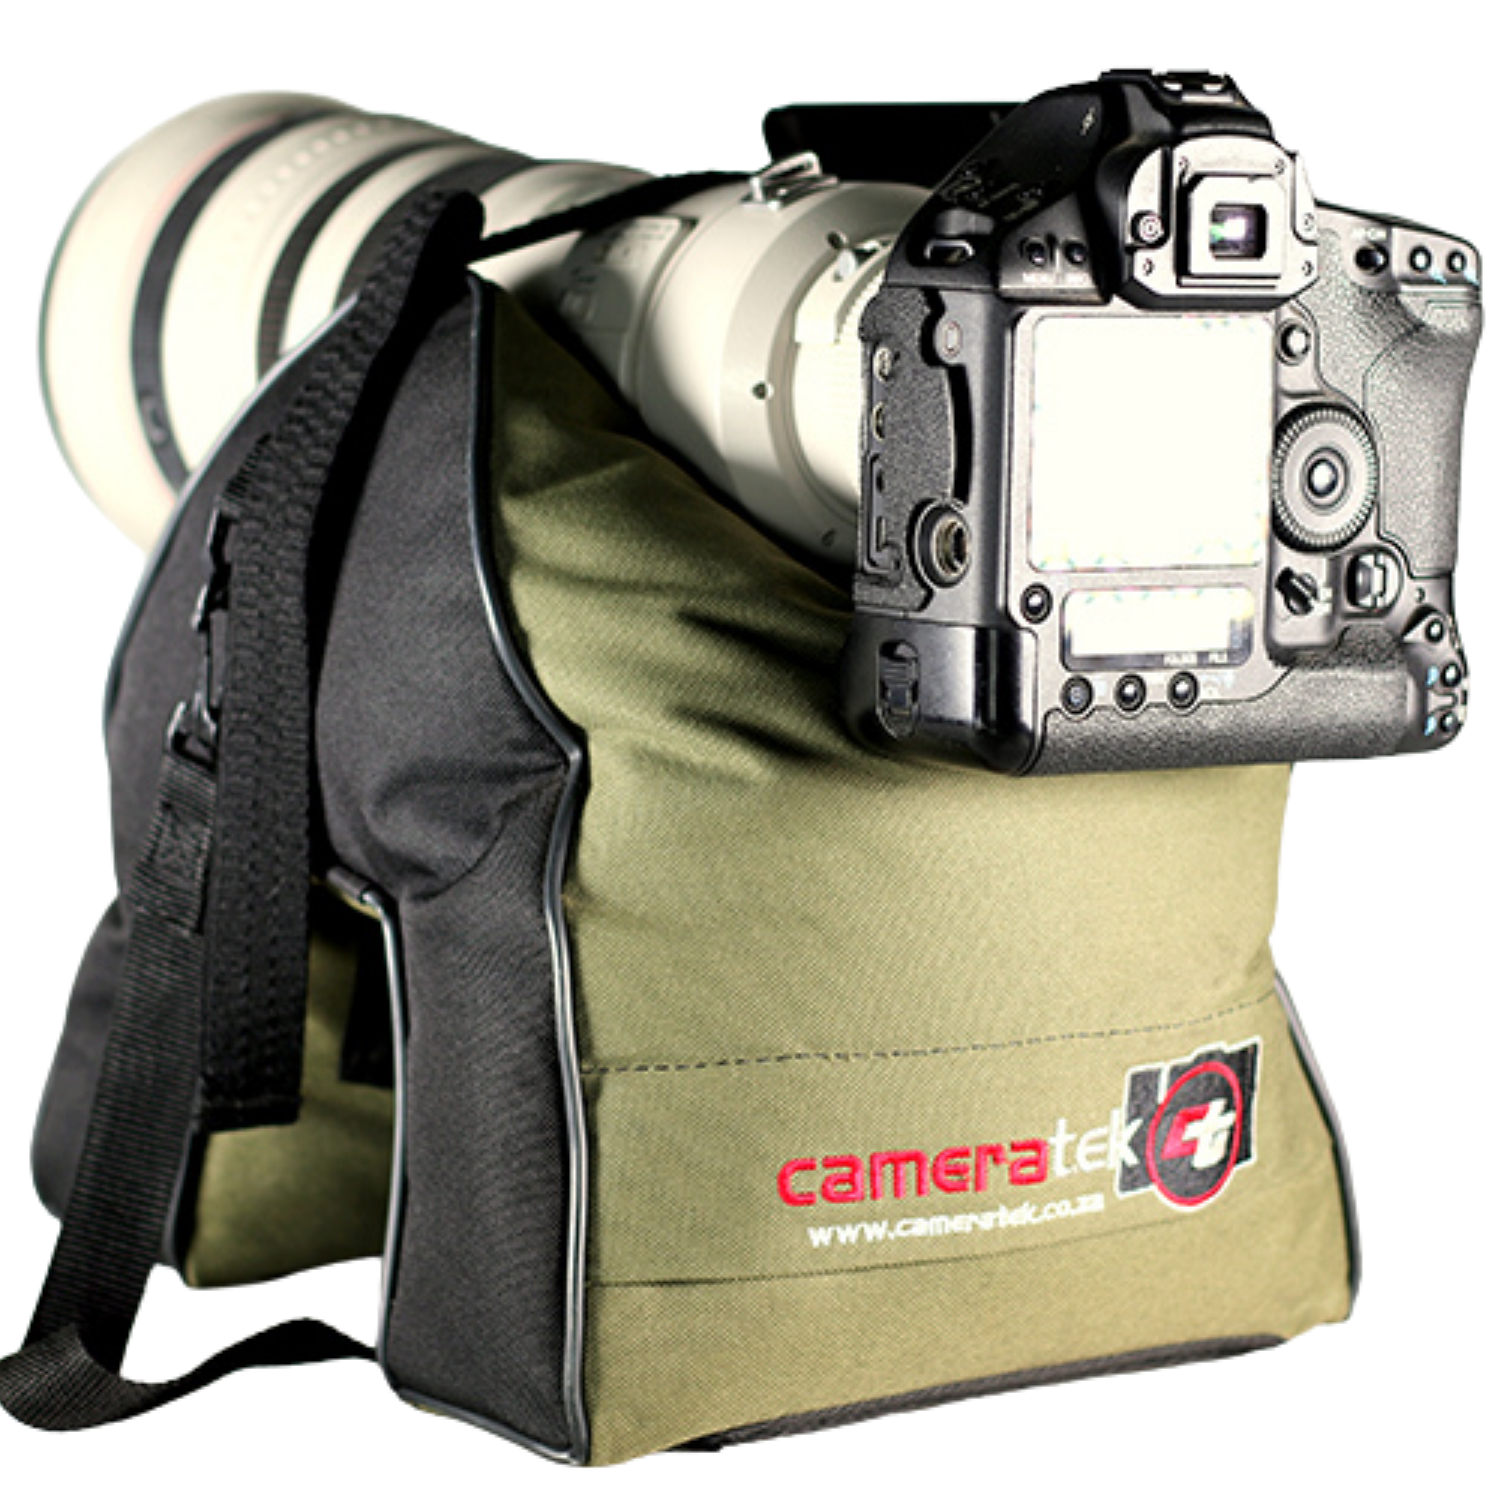 Cameratek Large Bean Bag Camera tek